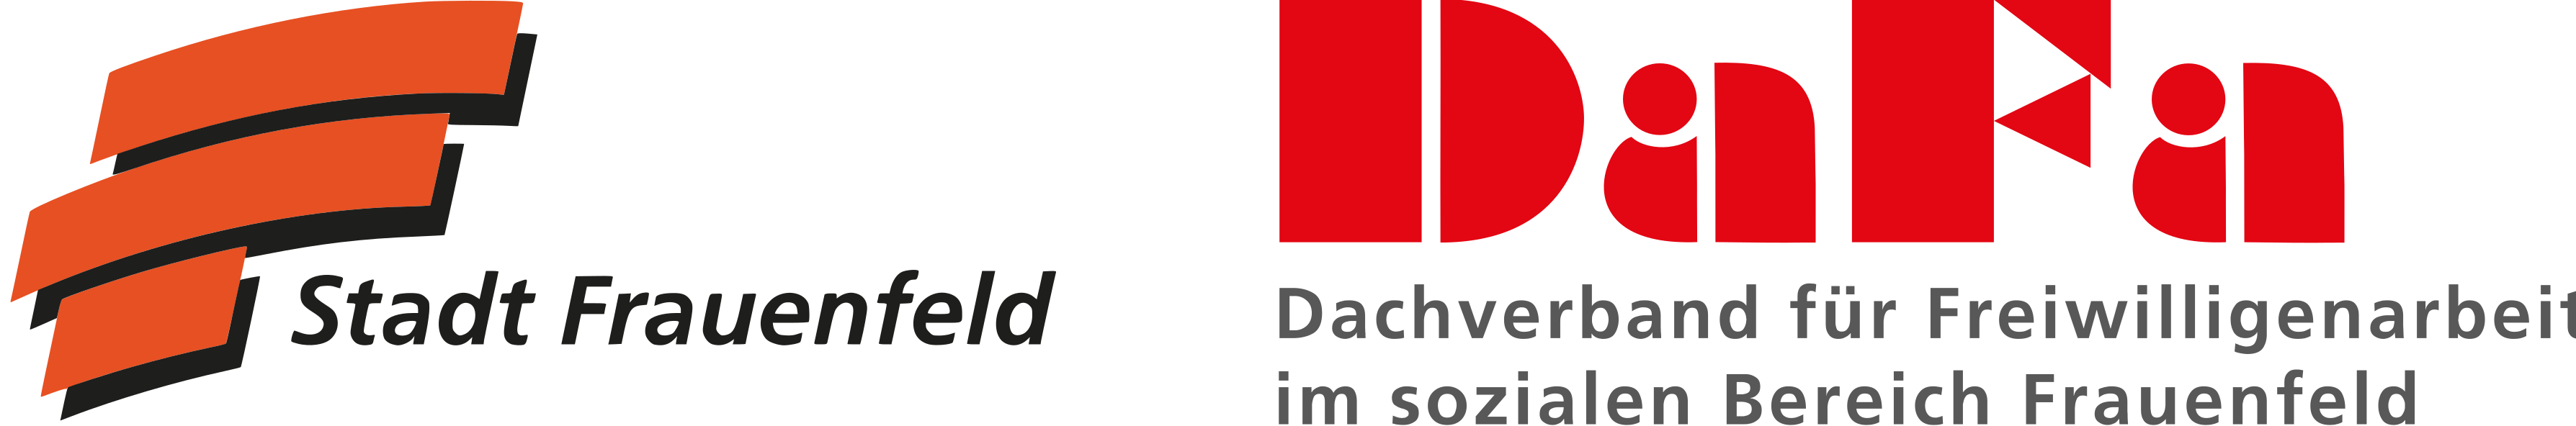 Logos von Stadt Frauenfeld und DaFa Dachverband für Freiwilligenarbeit Frauenfeld